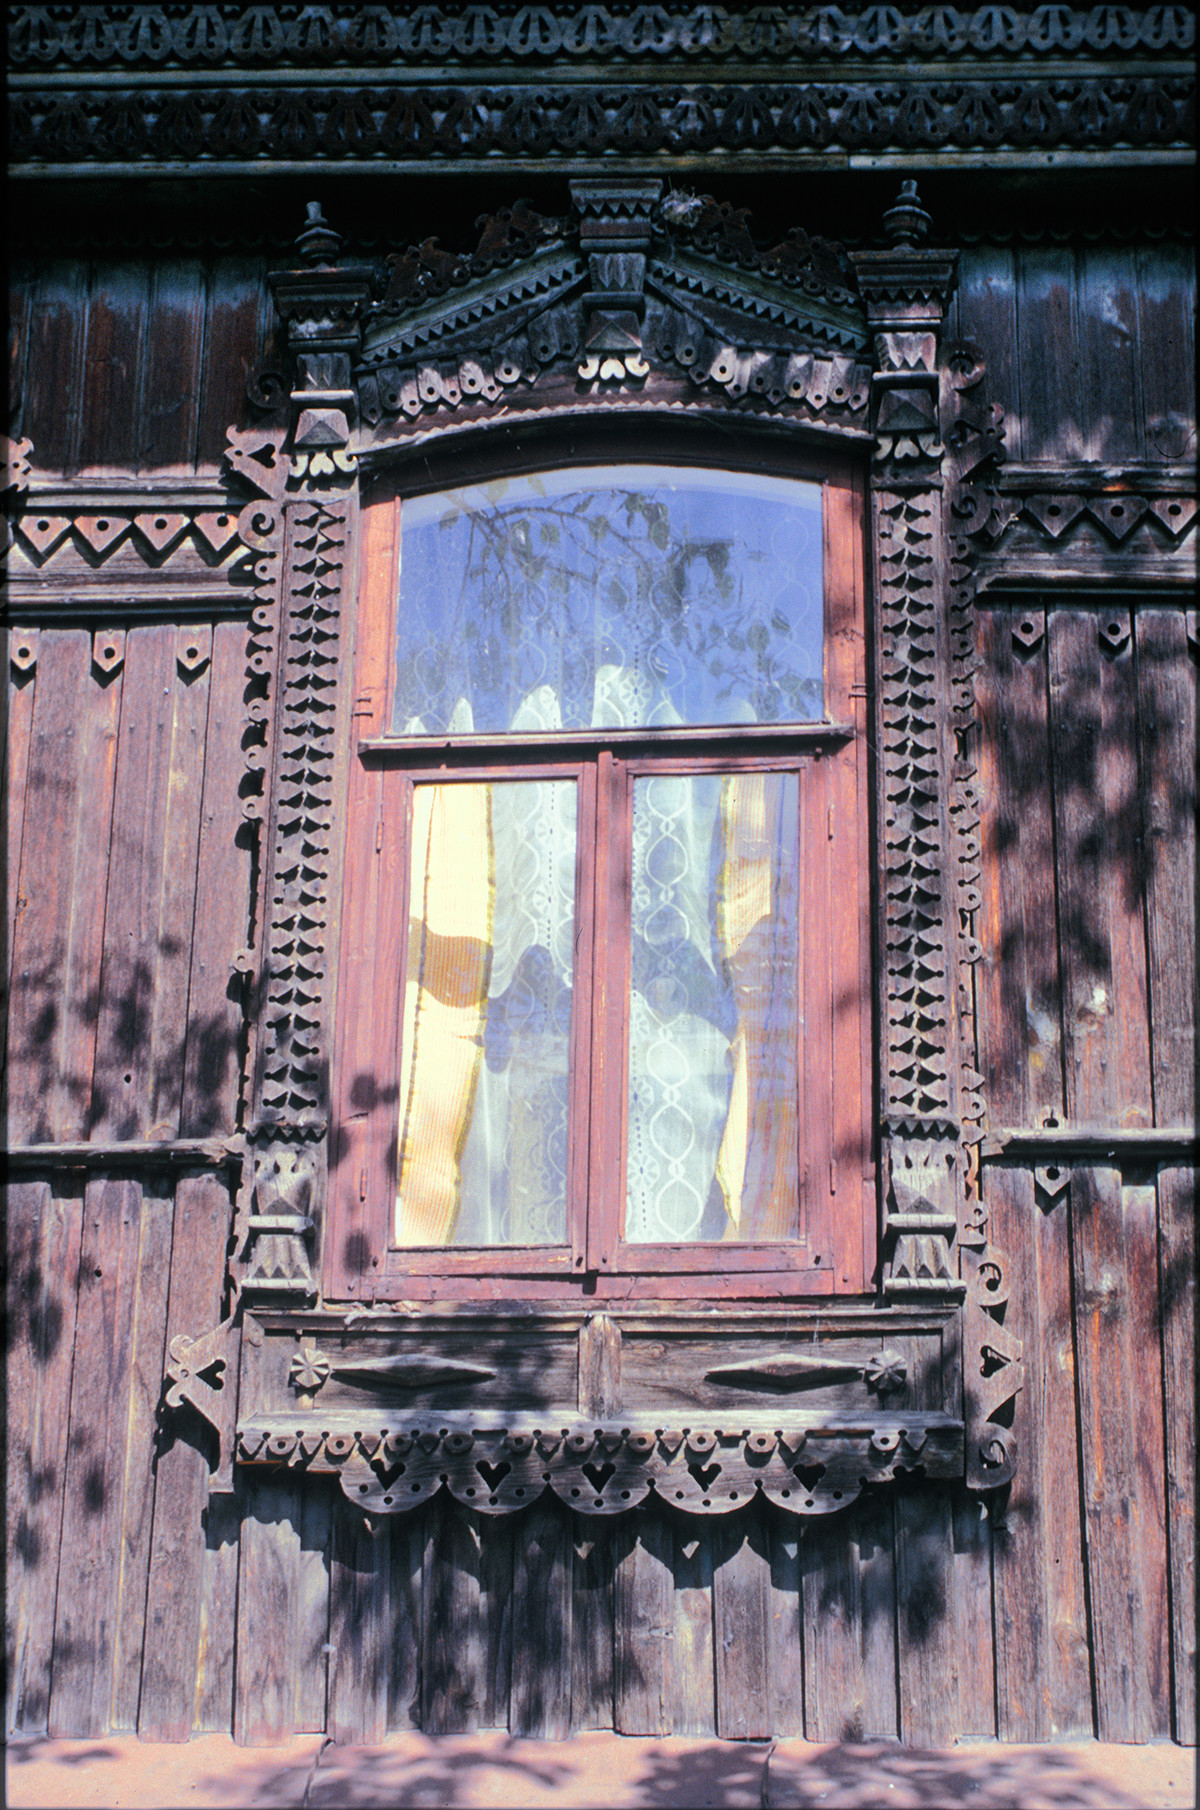 Ventana con marco decorativo, Calle Soviet 107. 15 de julio de 2003.